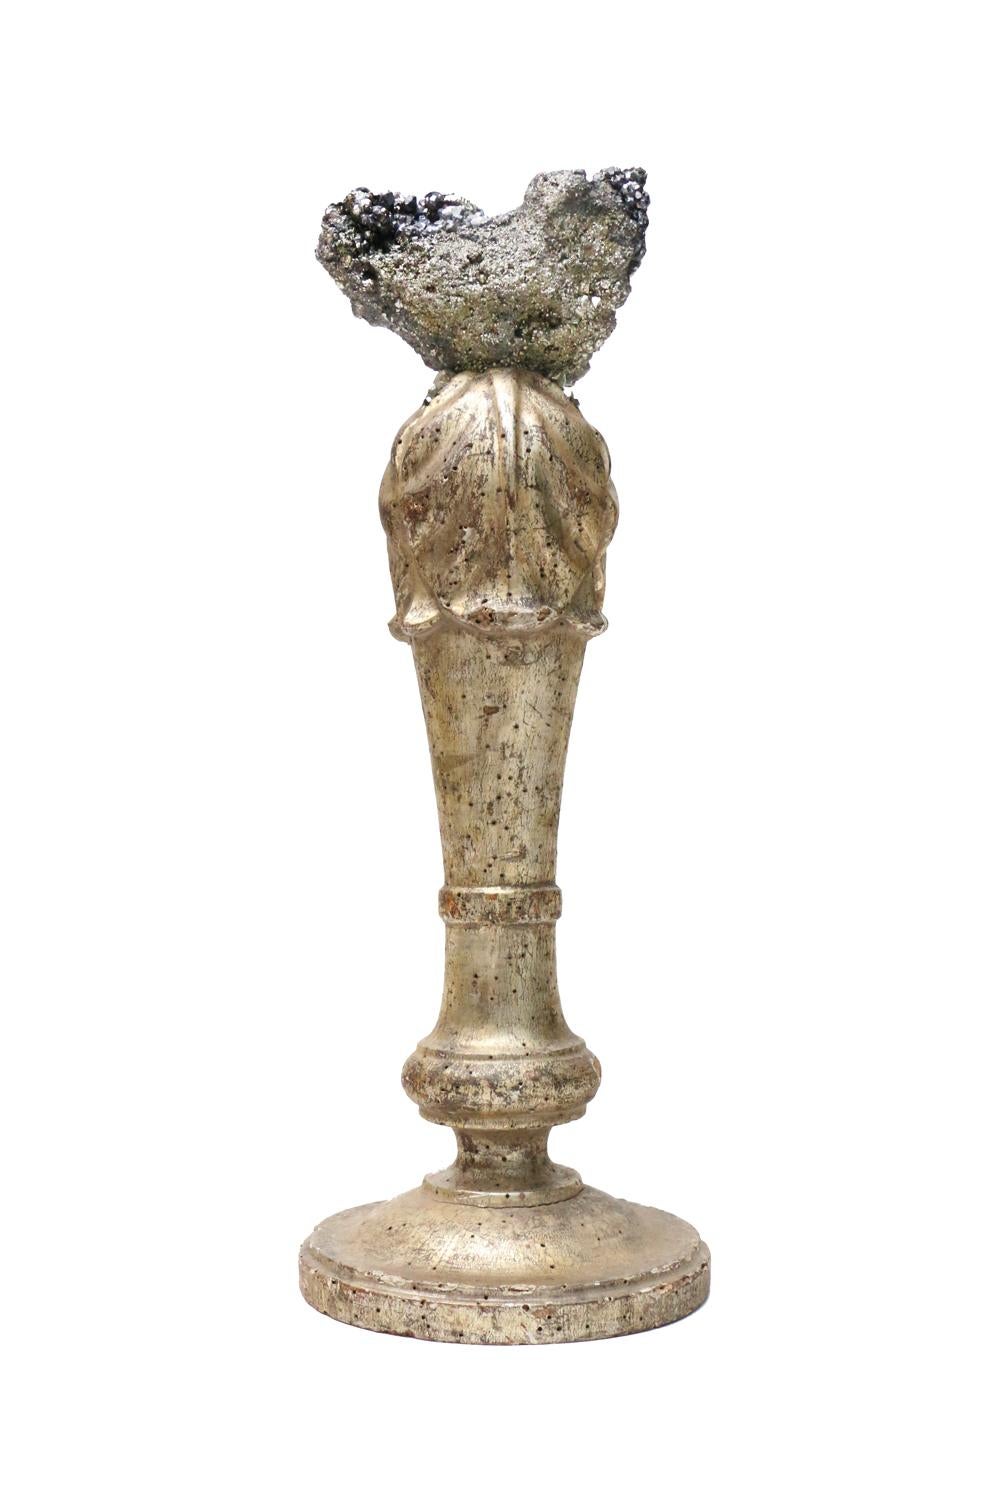 Skulpturaler italienischer Kerzenleuchter aus dem 18. Jahrhundert mit Bleiglanz- und Pyriteinlagen.

Das vergoldete Fragment war ursprünglich Teil eines Kerzenständers in einer historischen italienischen Kirche in Italien. Es ist mit der Koordinate